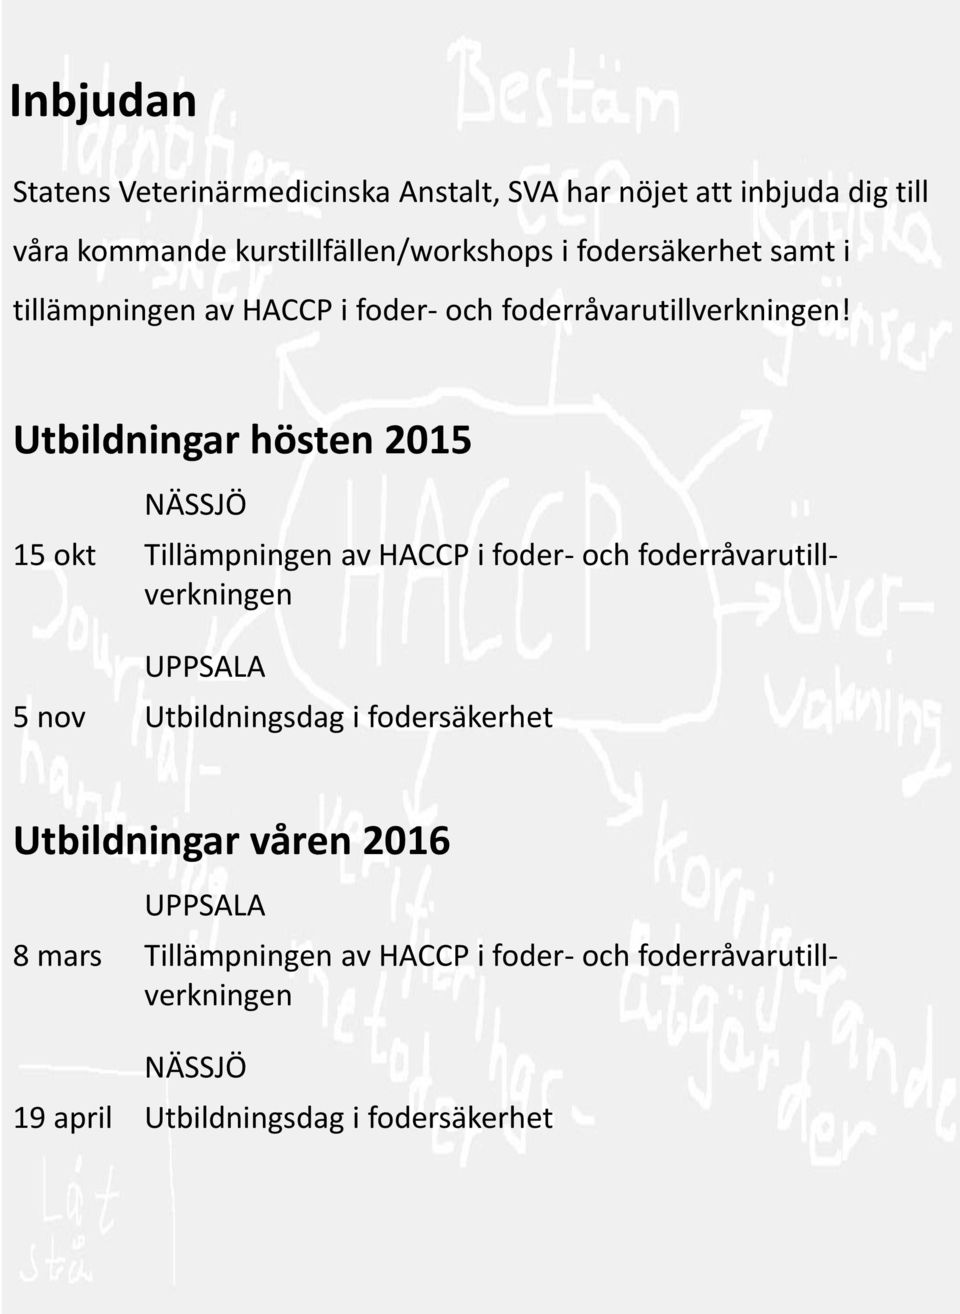 Utbildningar hösten 2015 NÄSSJÖ 15 okt Tillämpningen av HACCP i foder- och foderråvarutillverkningen UPPSALA 5 nov